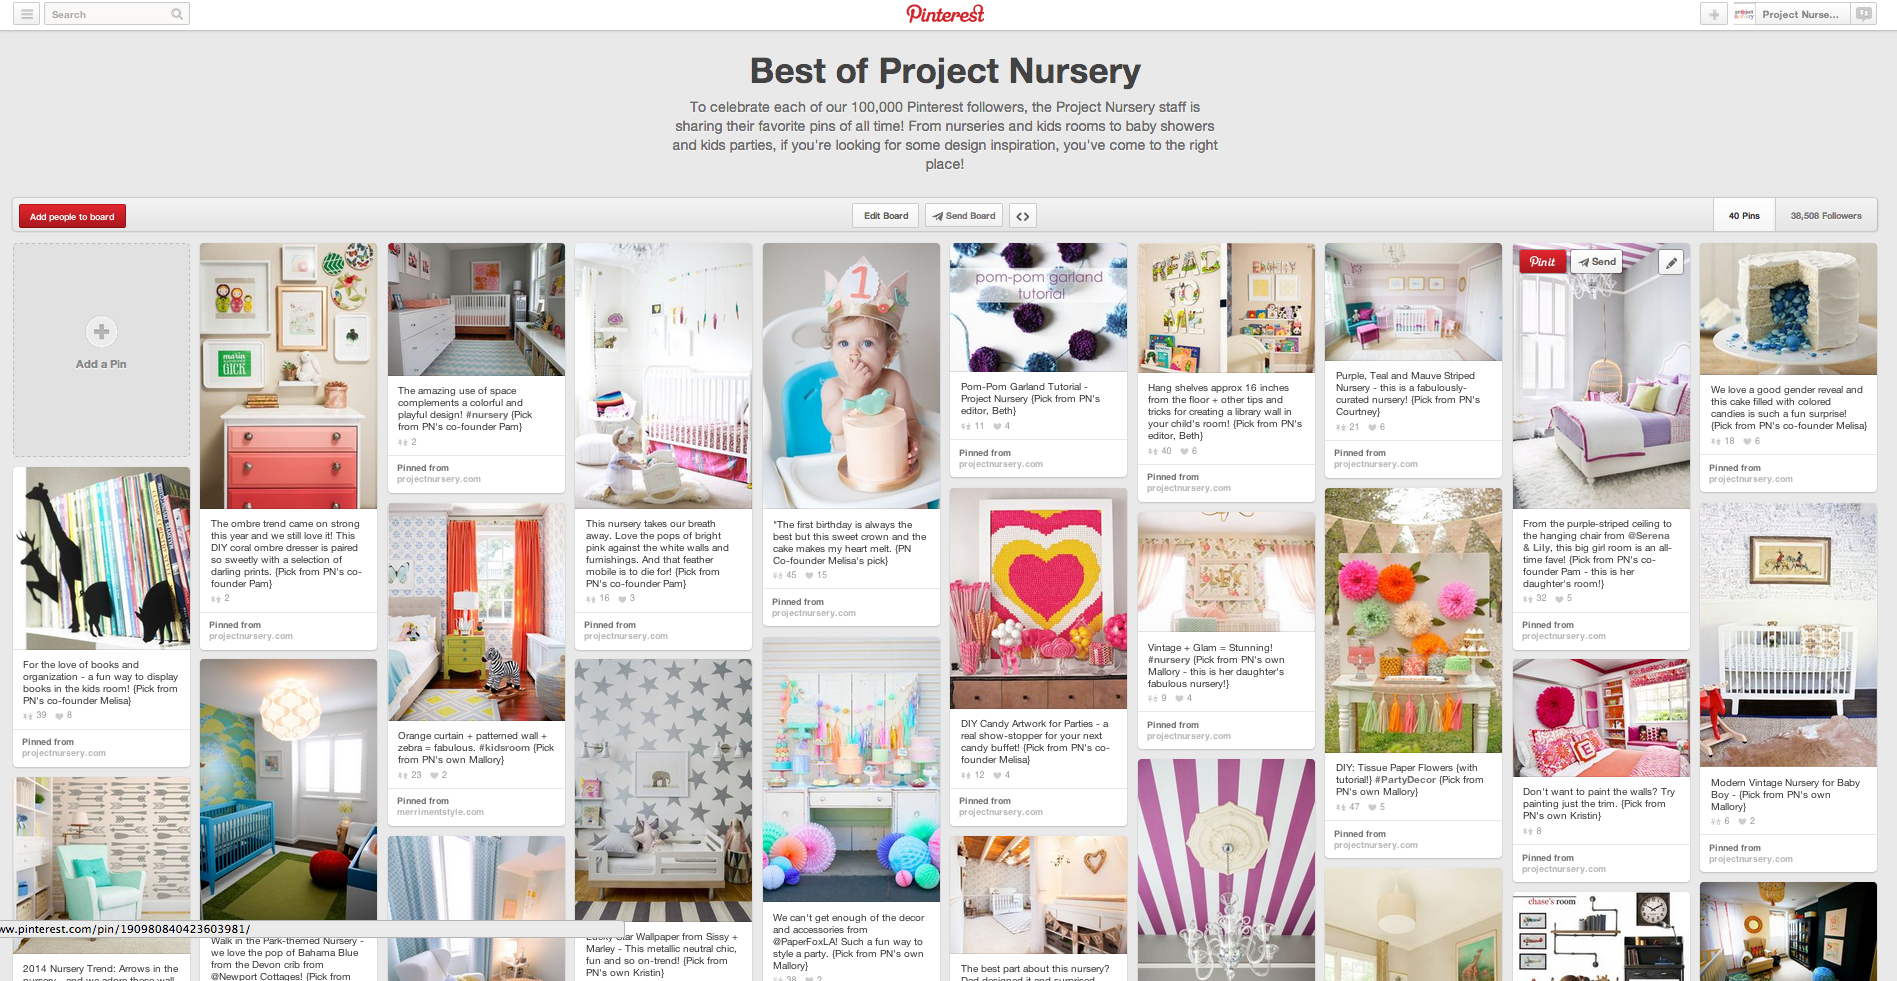 Best of Project Nursery Pinterest